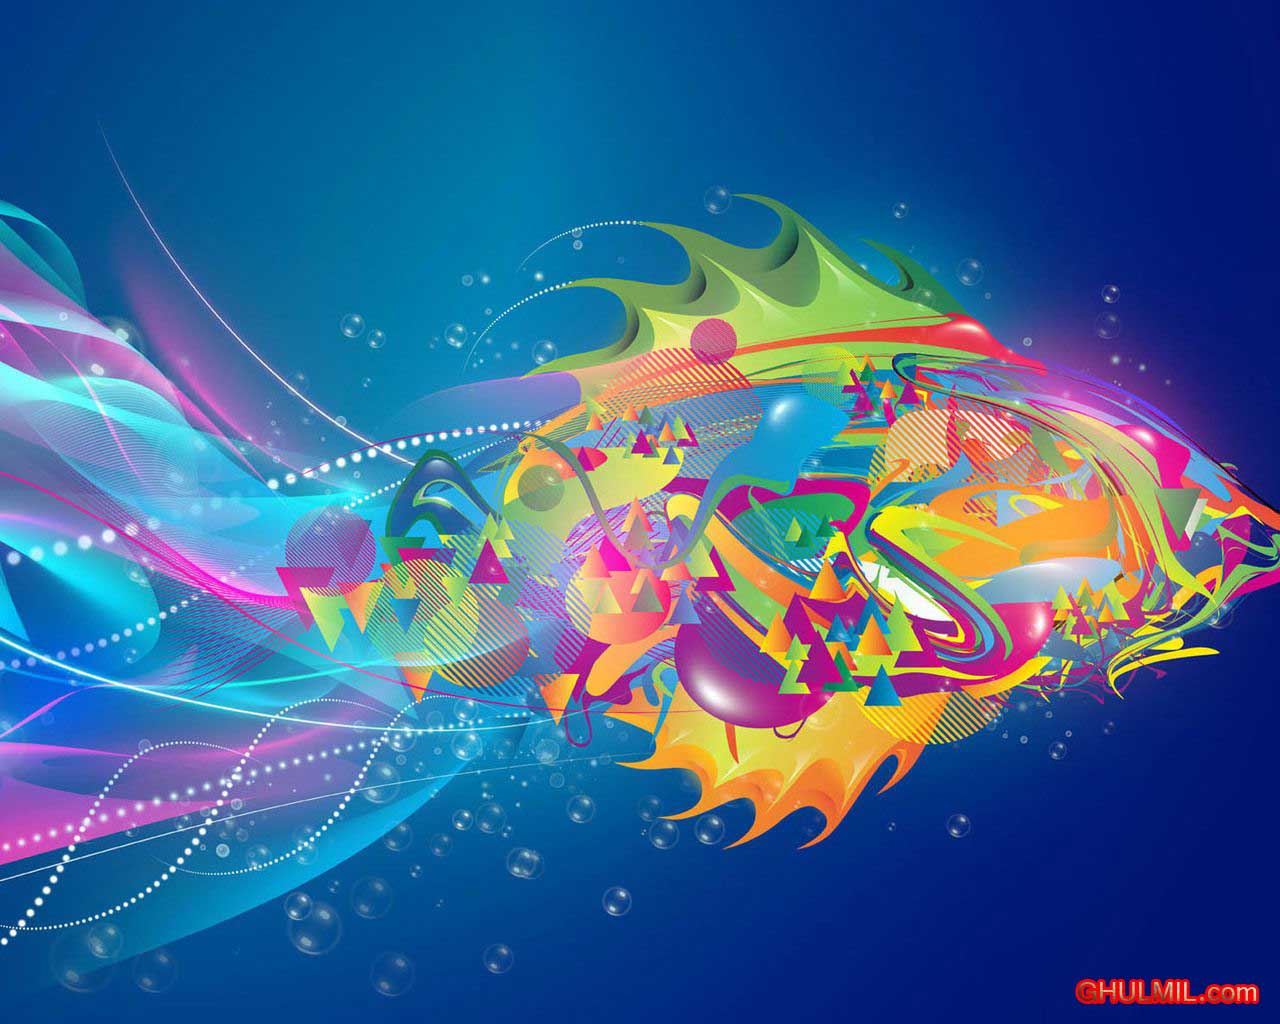 50+] Free Colorful Wallpaper Downloads - WallpaperSafari